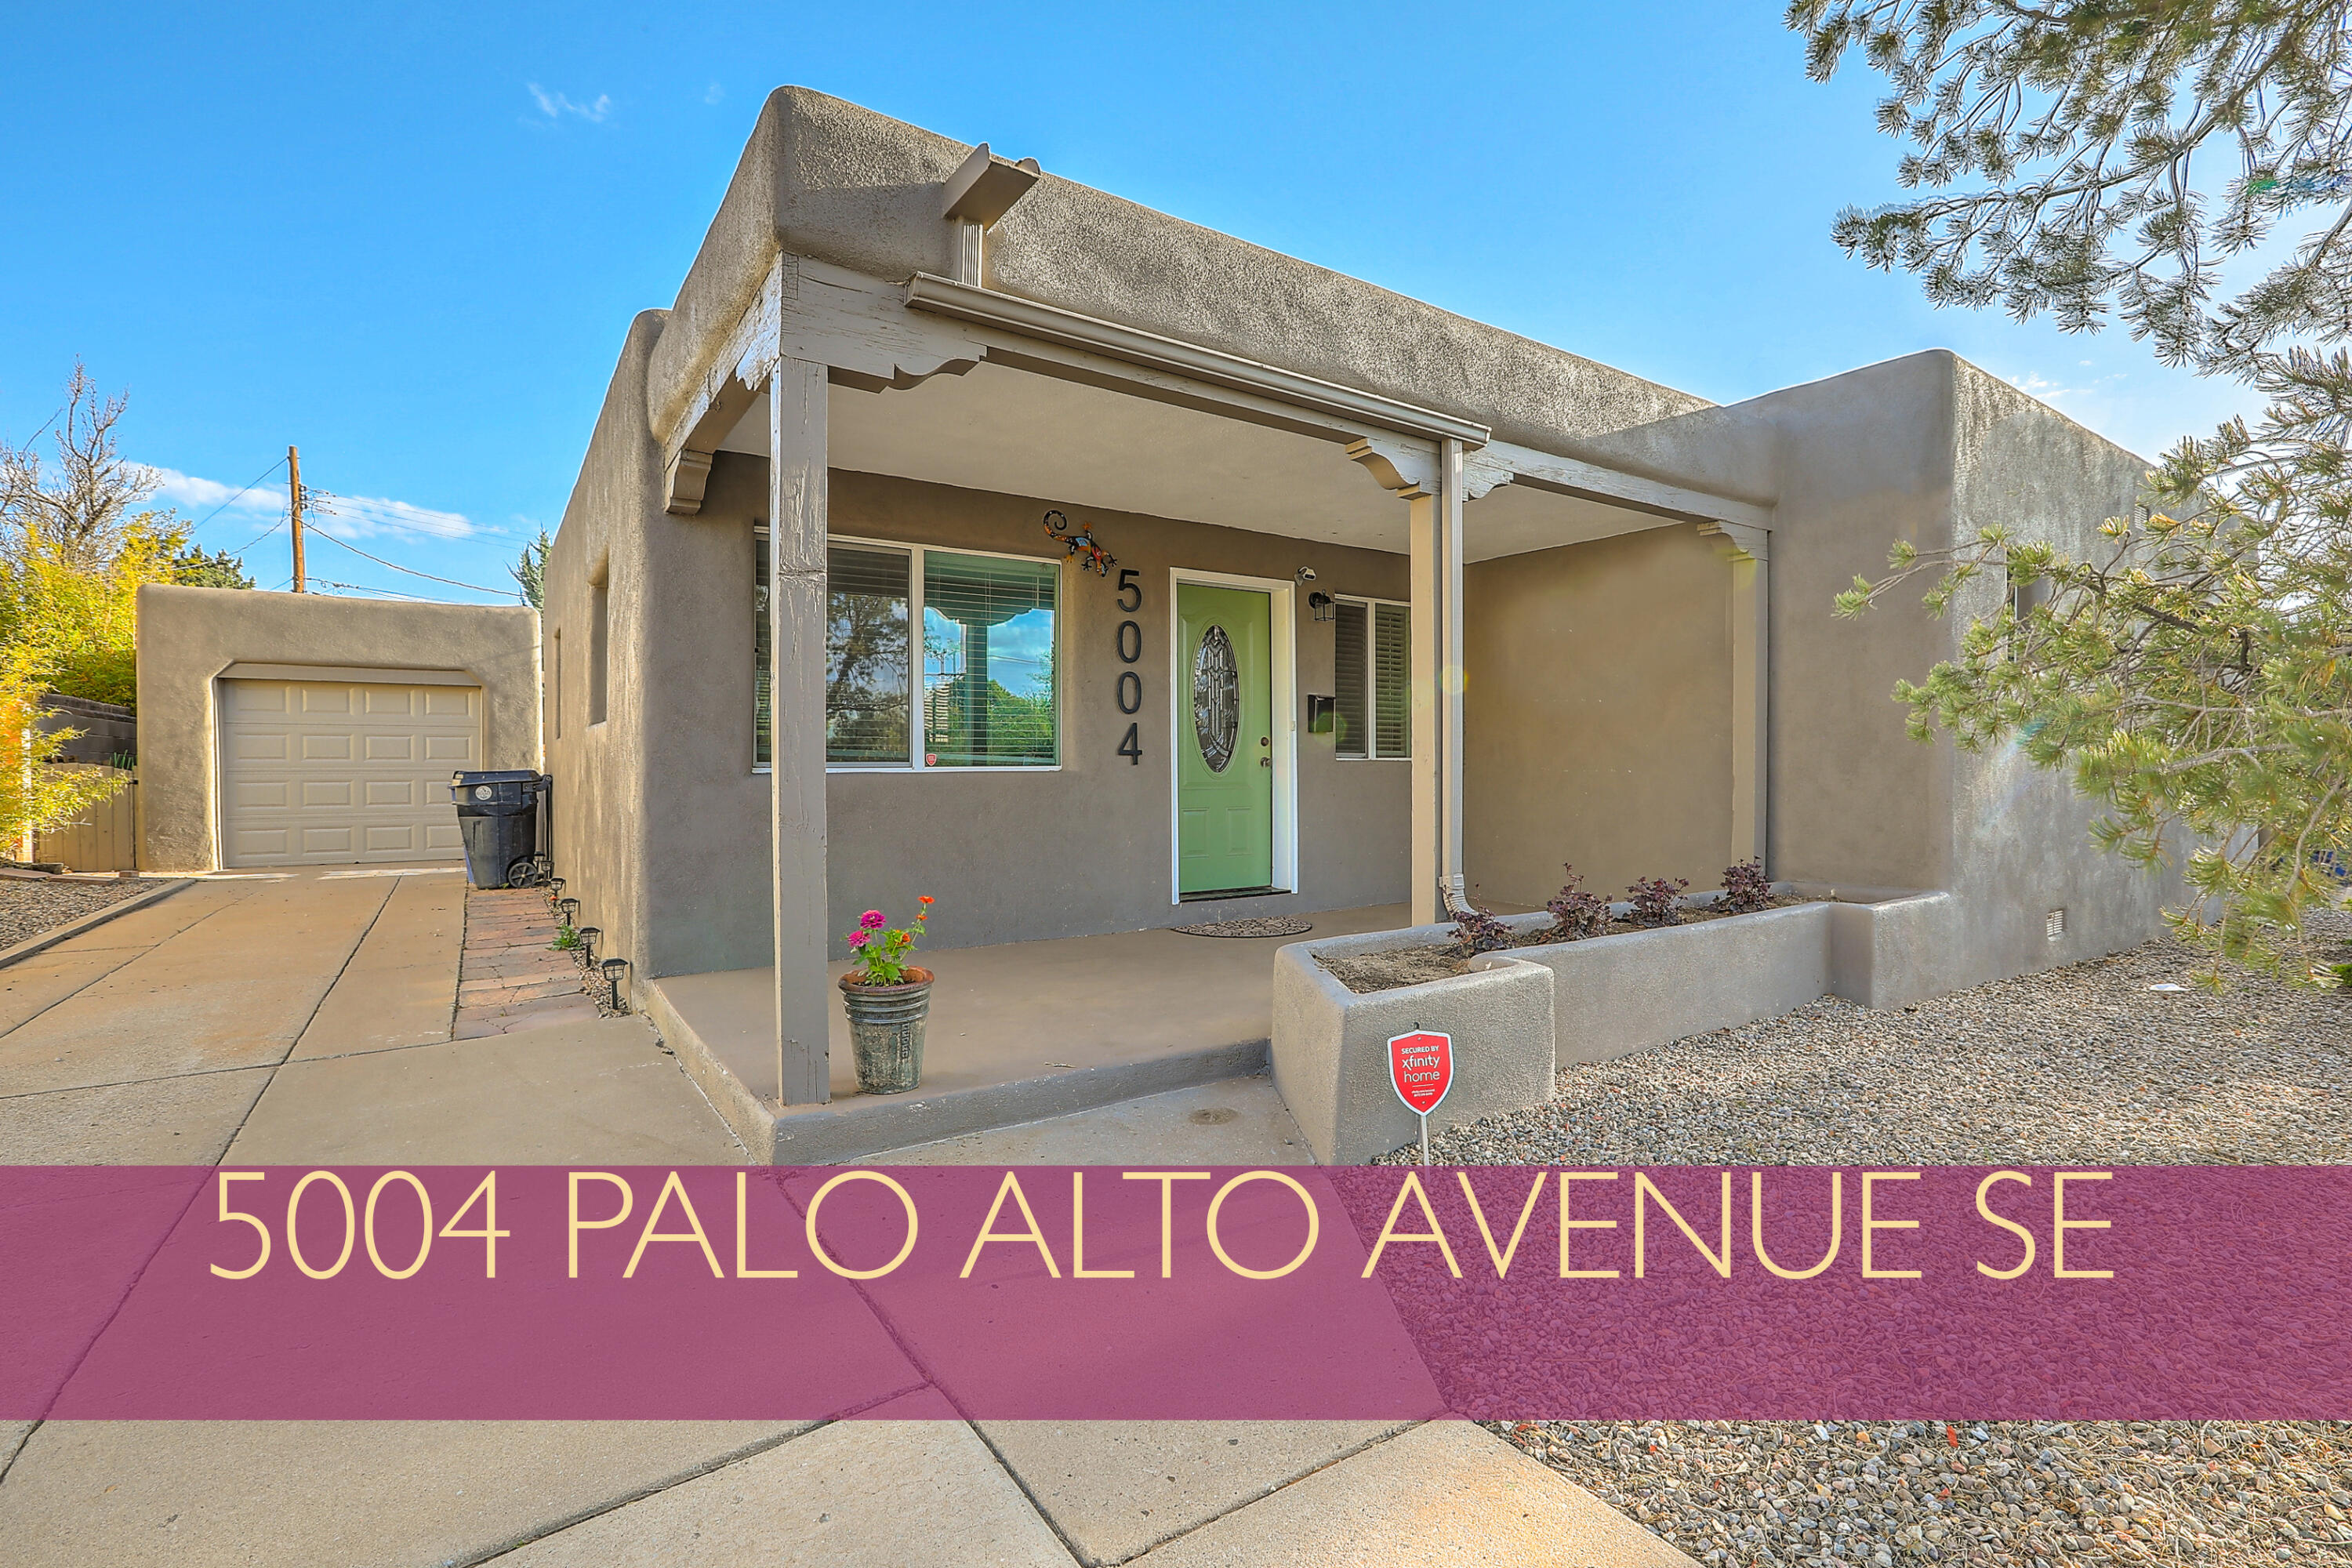 5004 Palo Alto Avenue SE, Albuquerque, New Mexico 87108, 3 Bedrooms Bedrooms, ,3 BathroomsBathrooms,Residential,For Sale,5004 Palo Alto Avenue SE,1061434